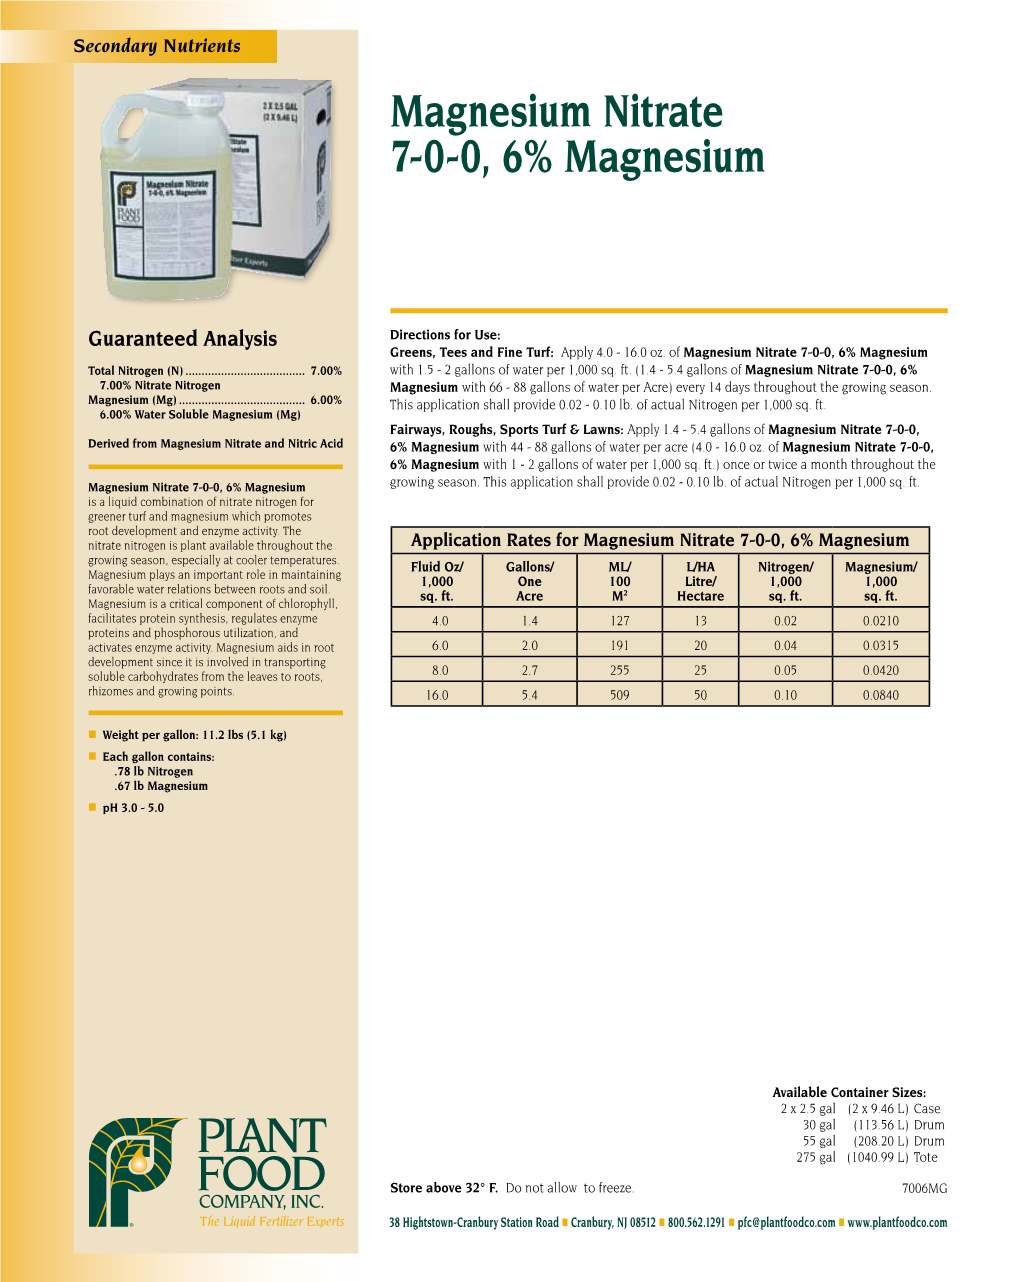 Magnesium Nitrate 7-0-0, 6% Magnesium